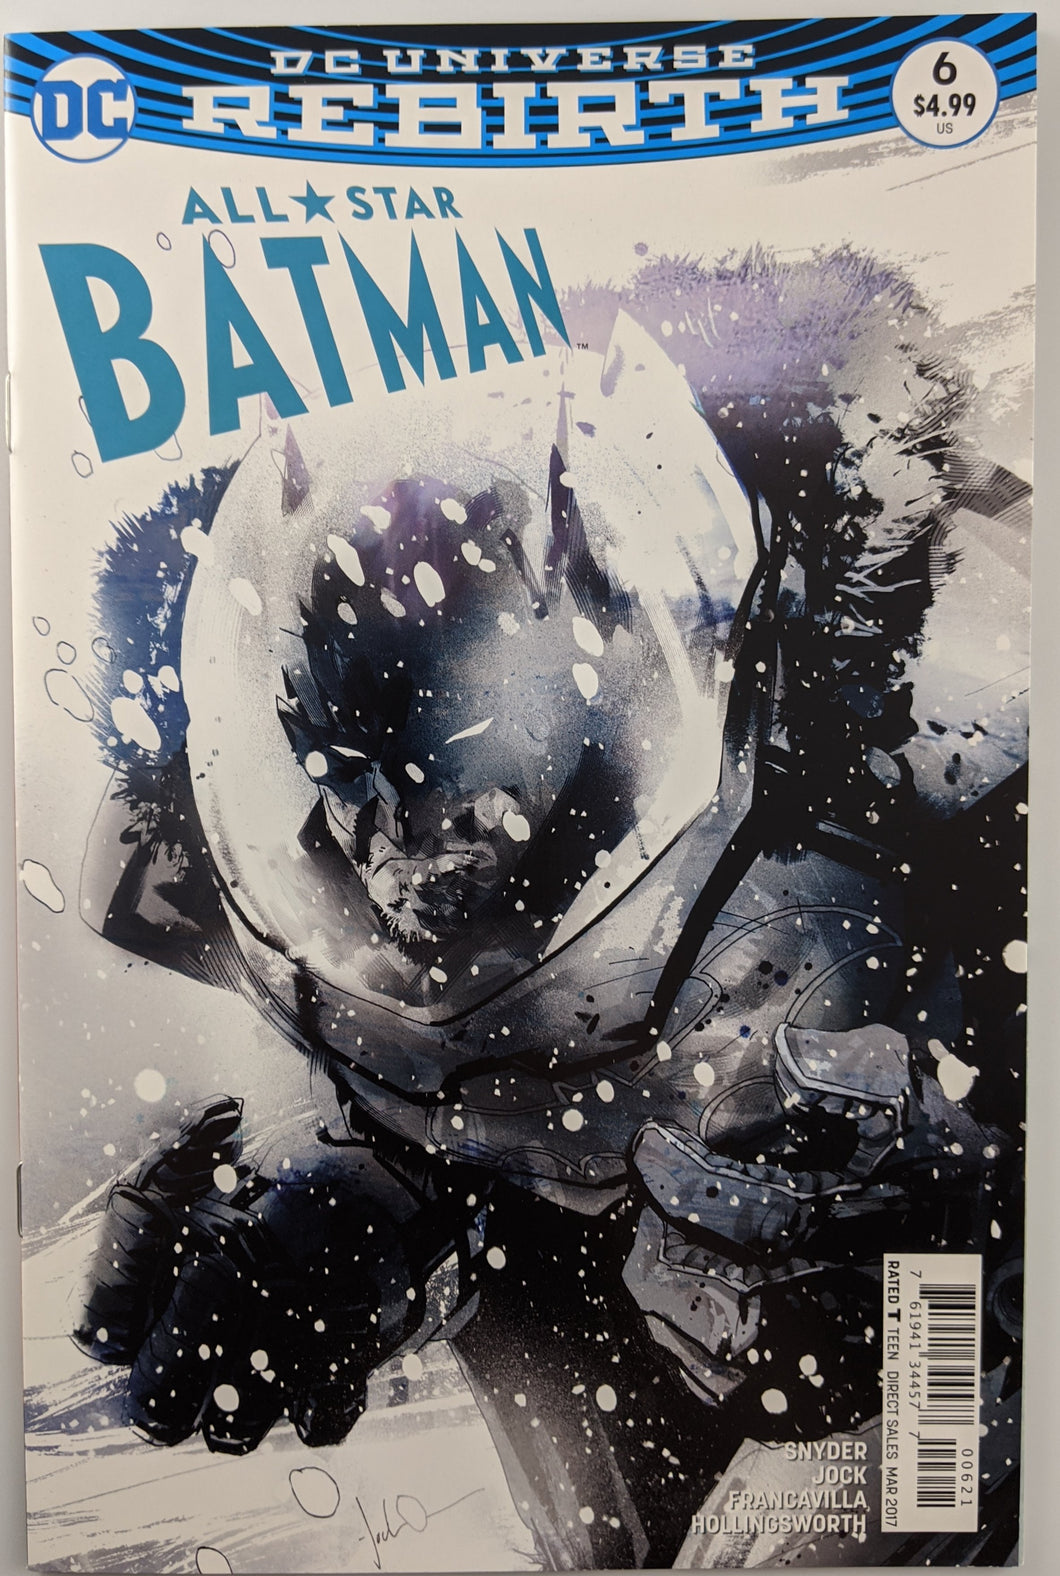 All-Star Batman (2016) #6